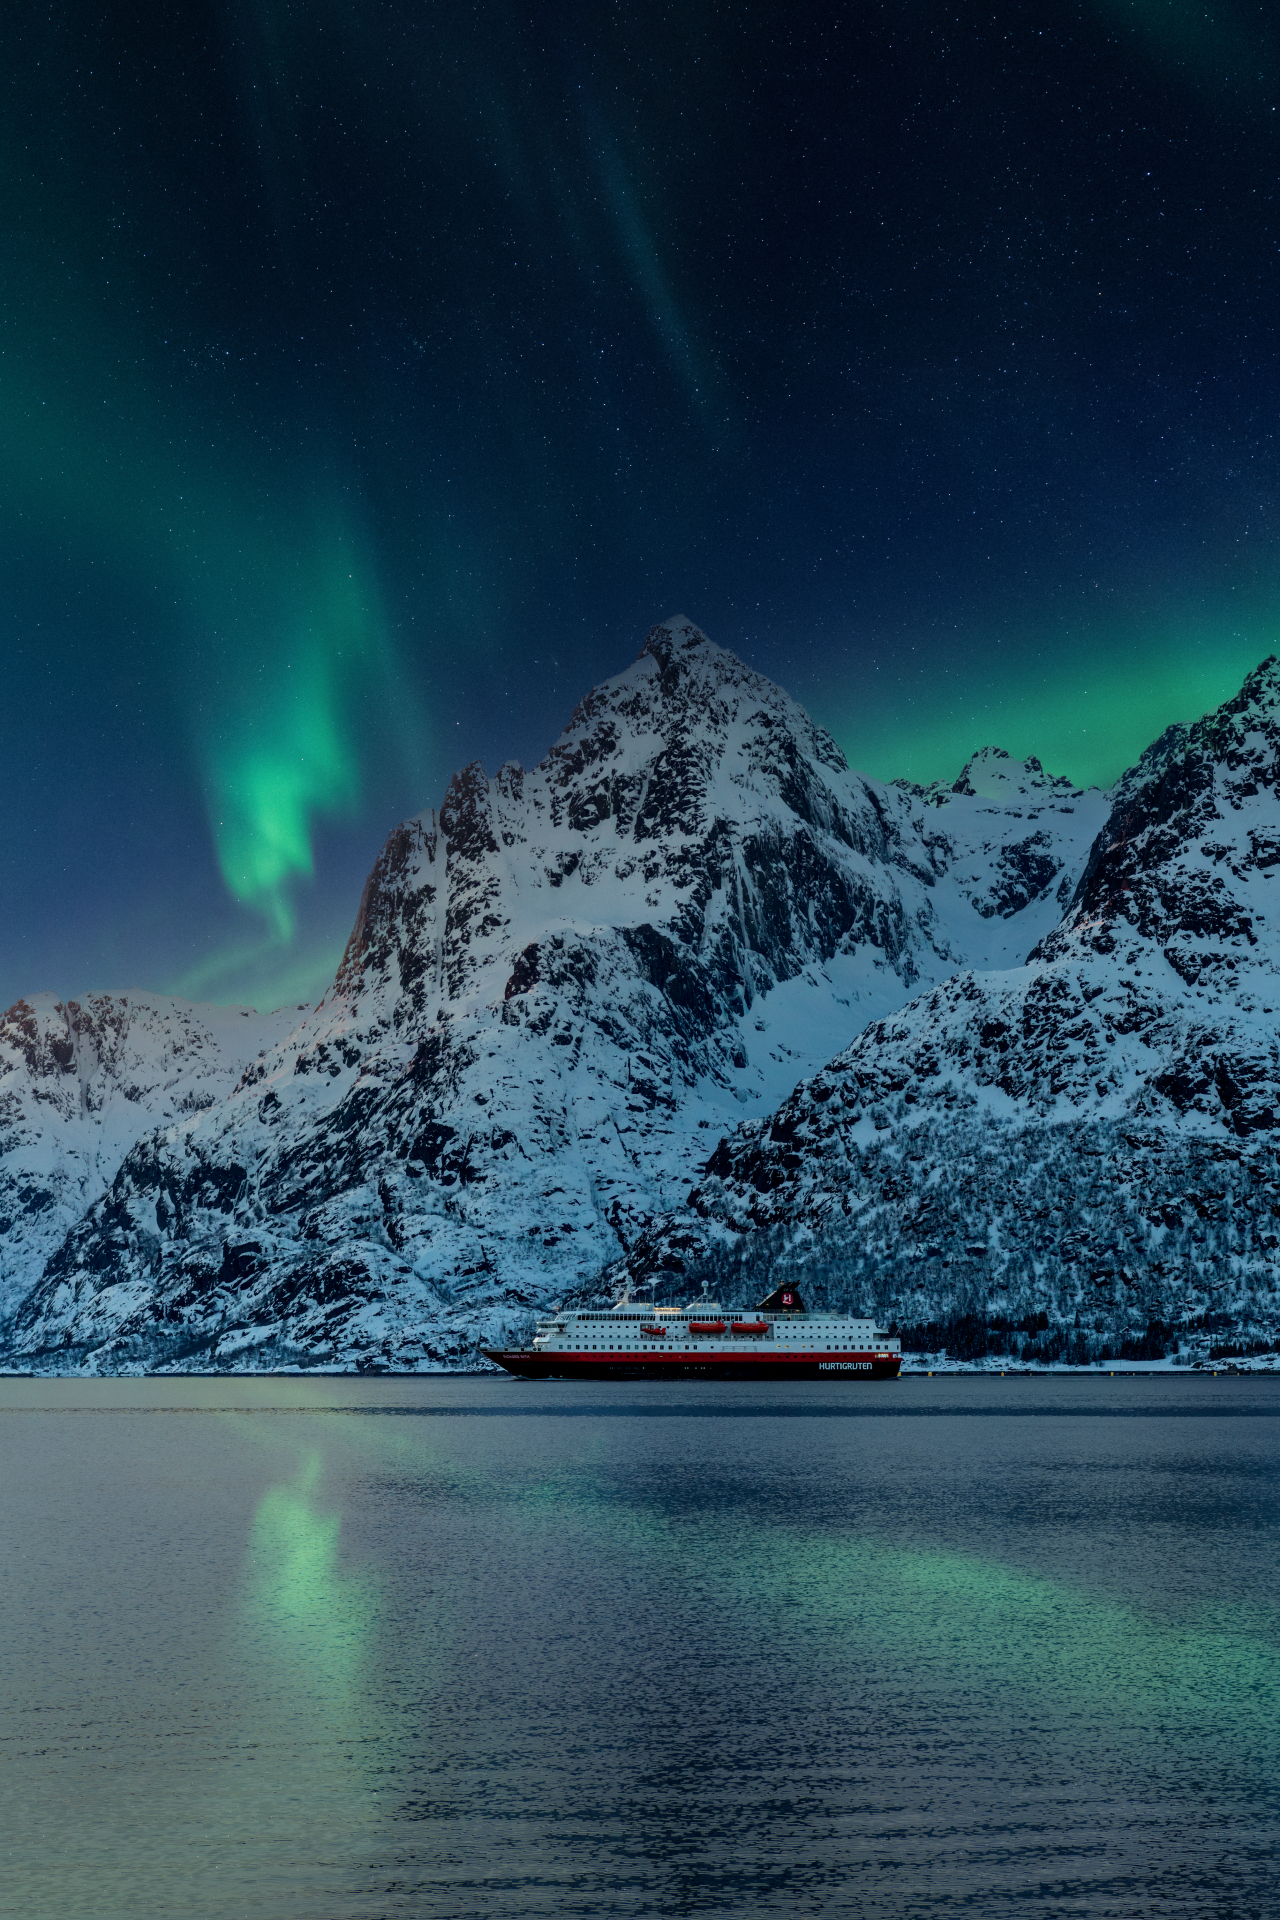 Le navire Hurtigruten sous une aurore boréale avec de hautes montagnes en arrière-plan.